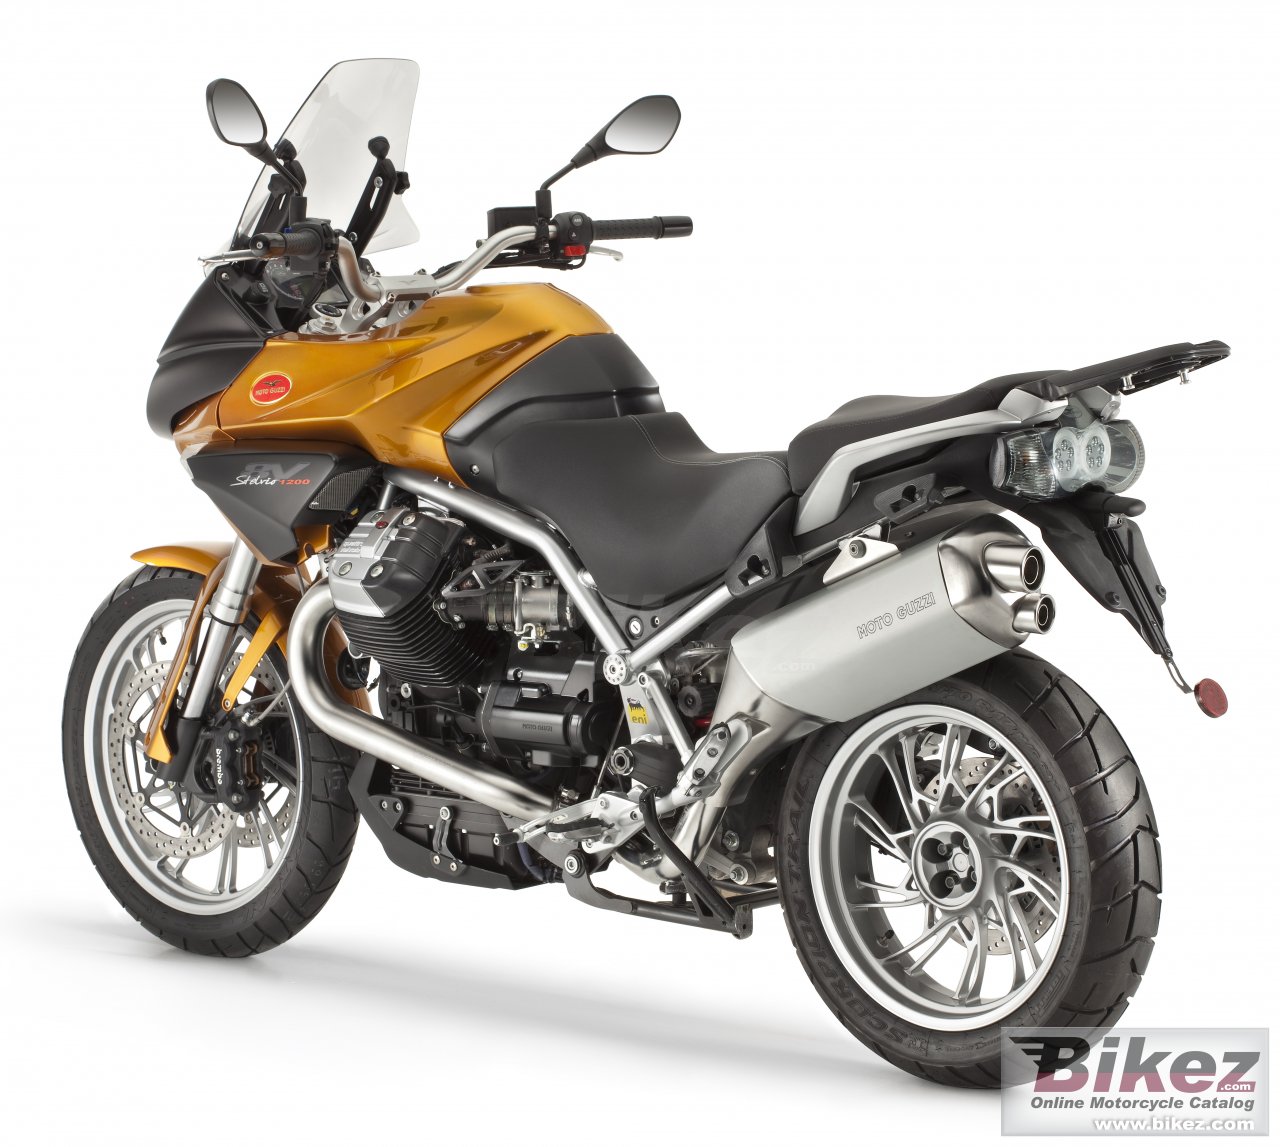 Moto Guzzi Stelvio 1200 4V ABS